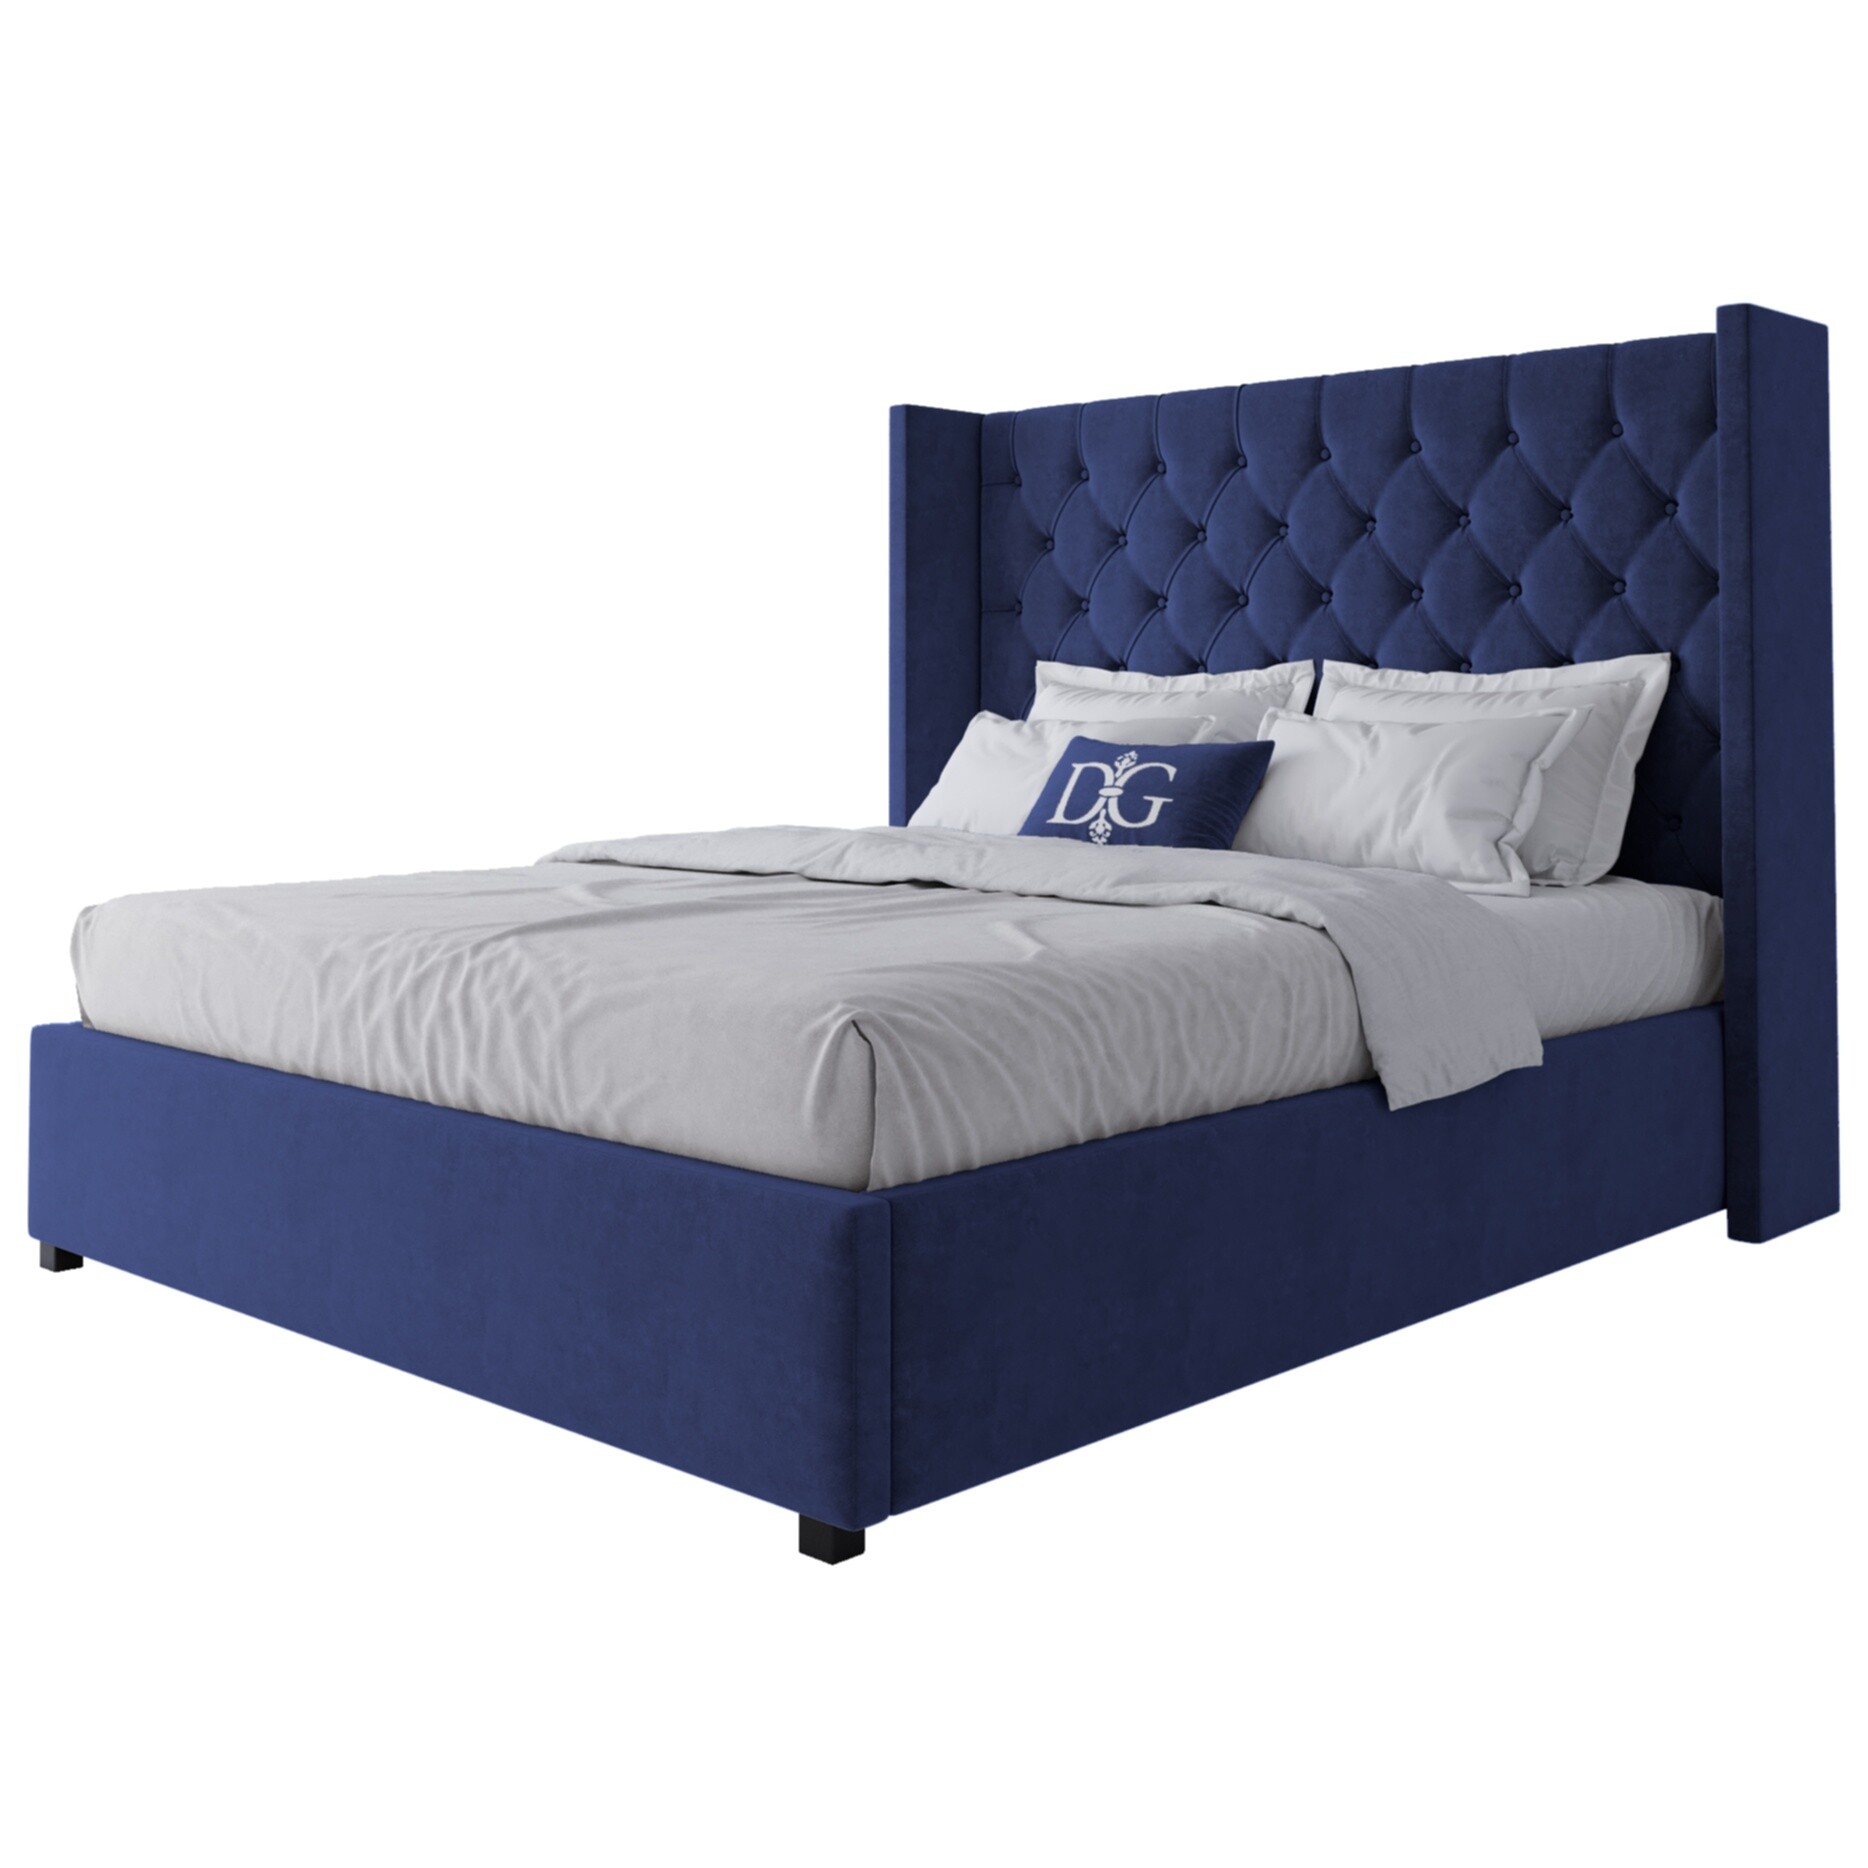 Кровать двуспальная 160х200 см синяя из велюра с каретной стяжкой без гвоздиков Wing-2